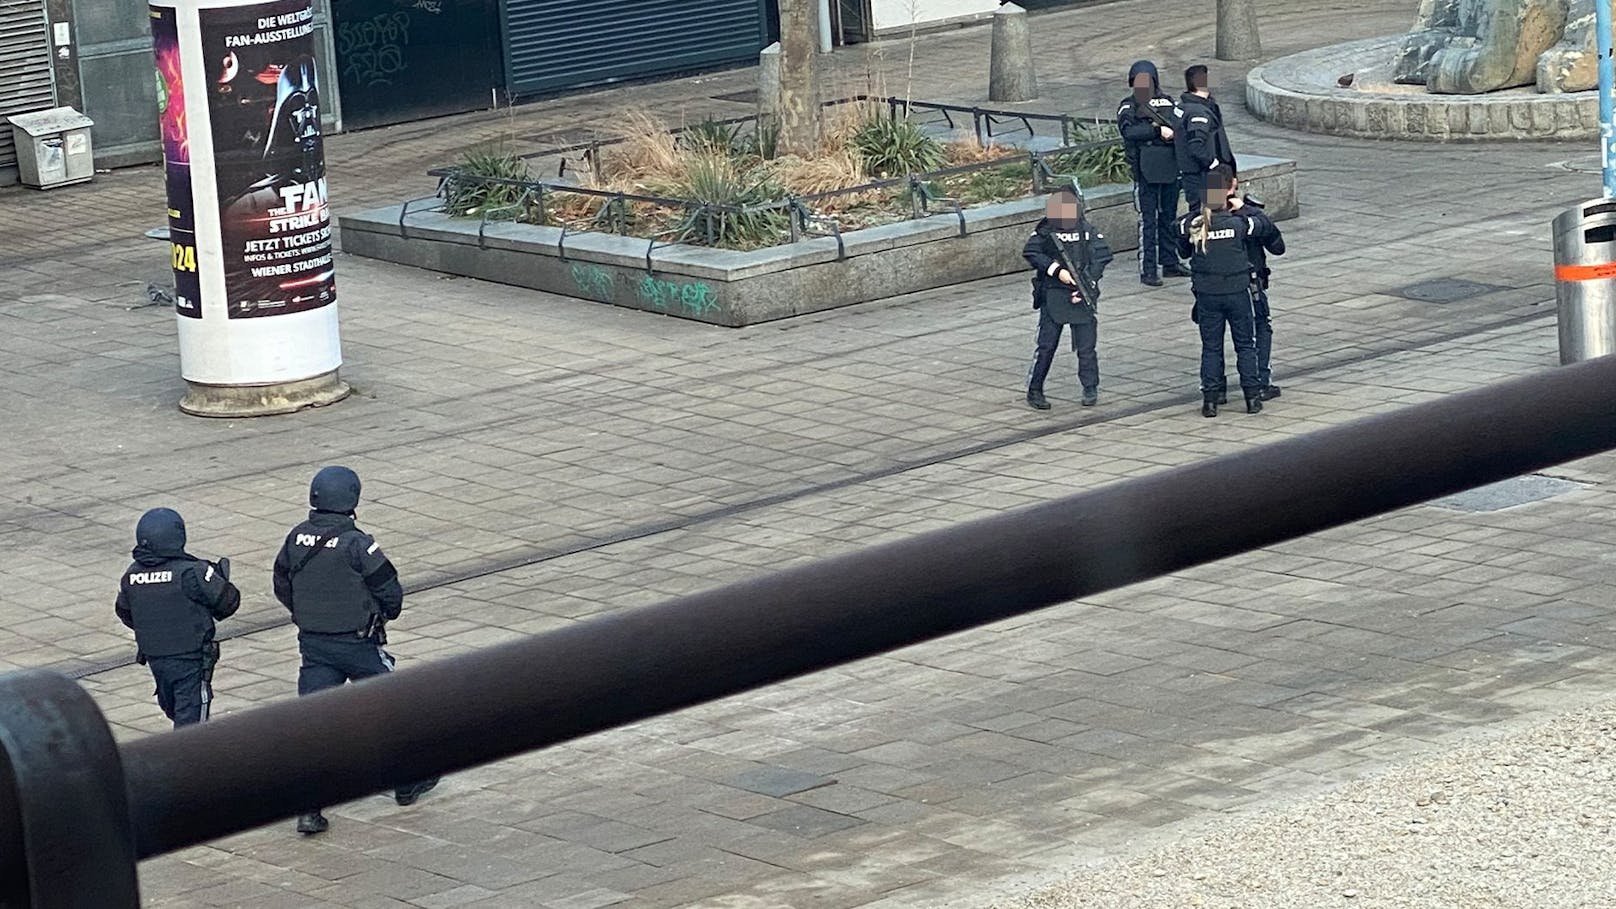 Polizei schwer bewaffnet – Großfahndung läuft in Wien